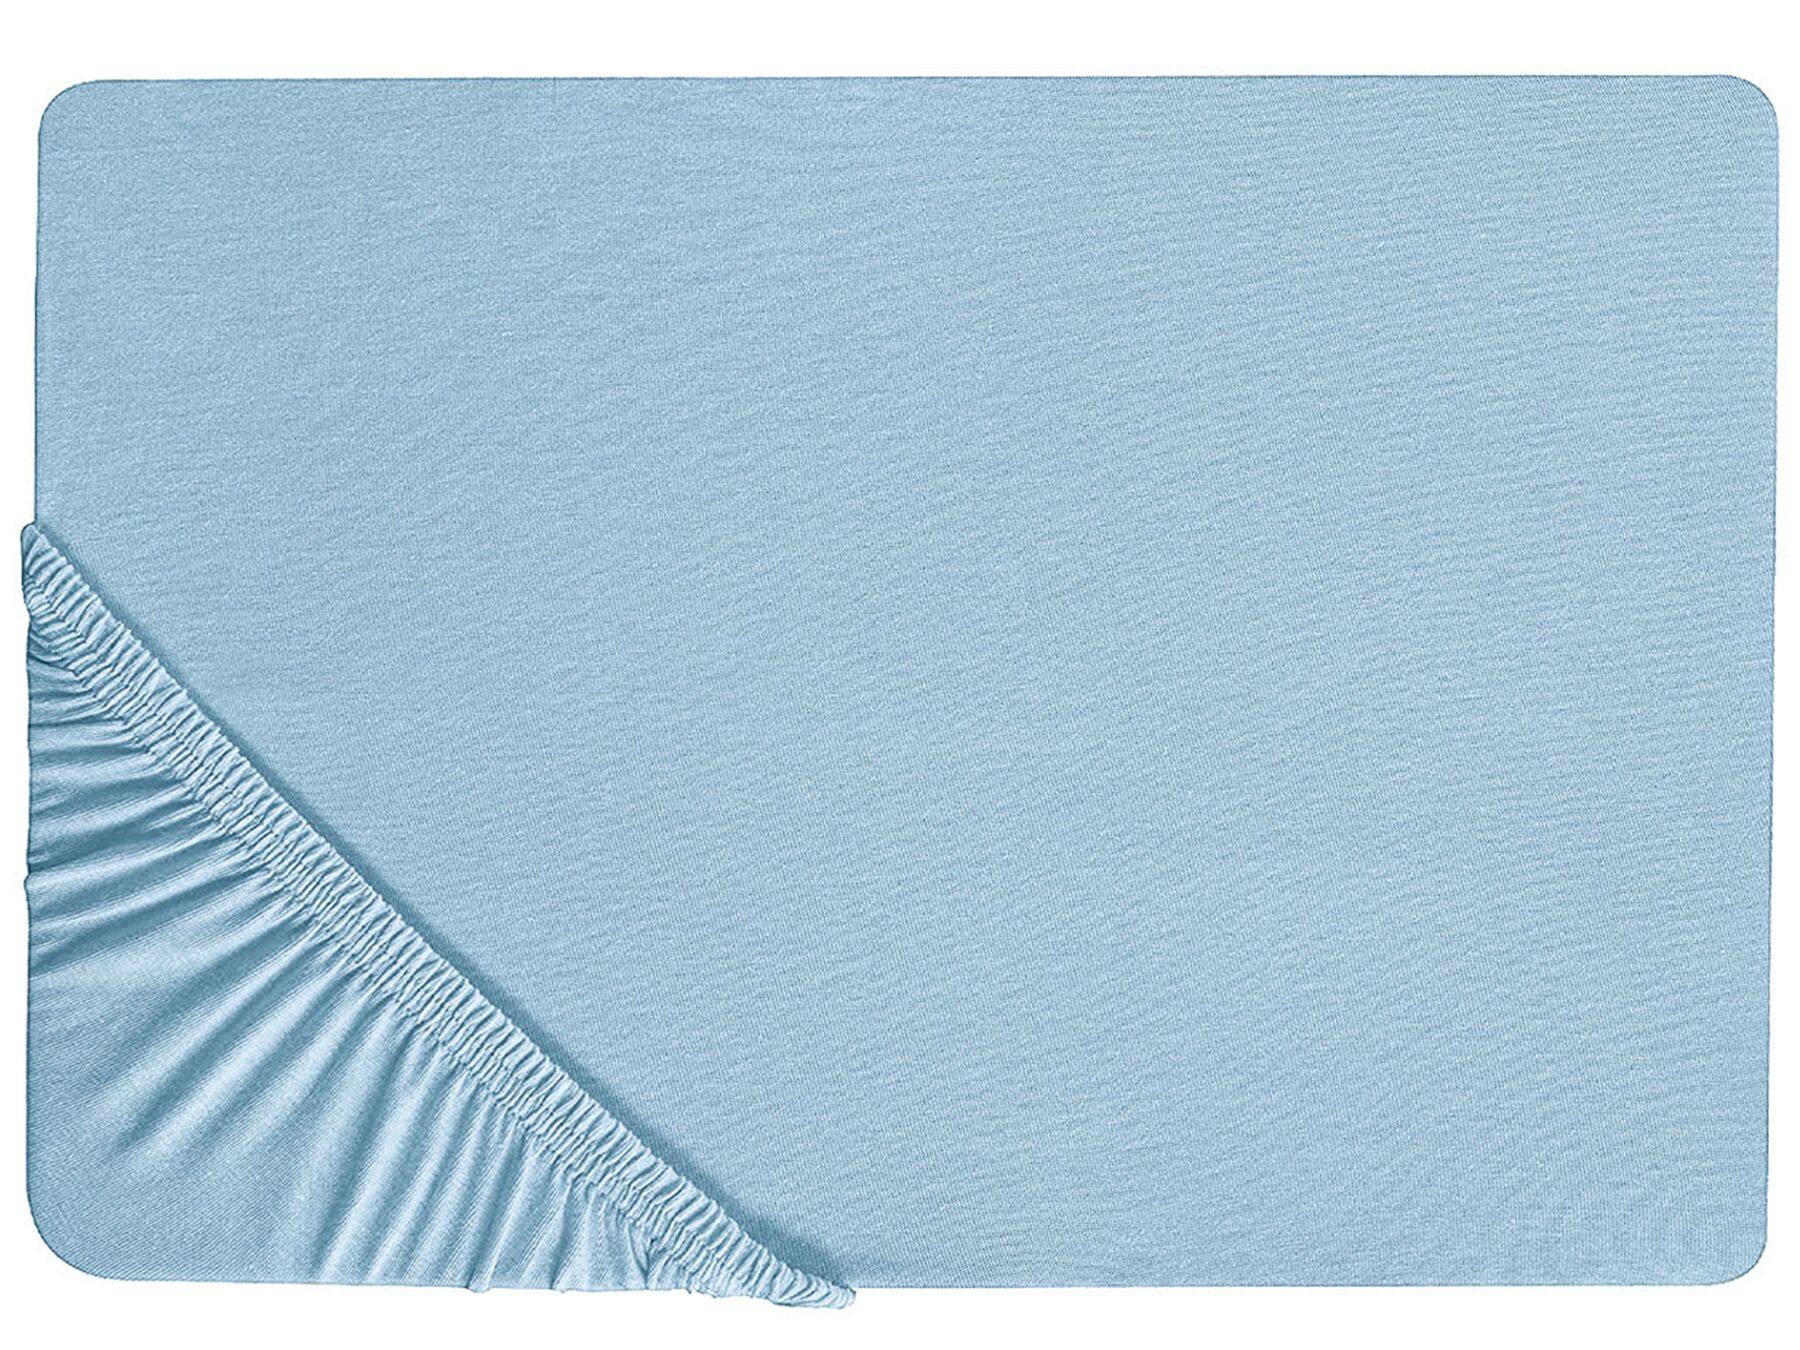 Hoeslaken katoen blauw 140 x 200 cm HOFUF_815971